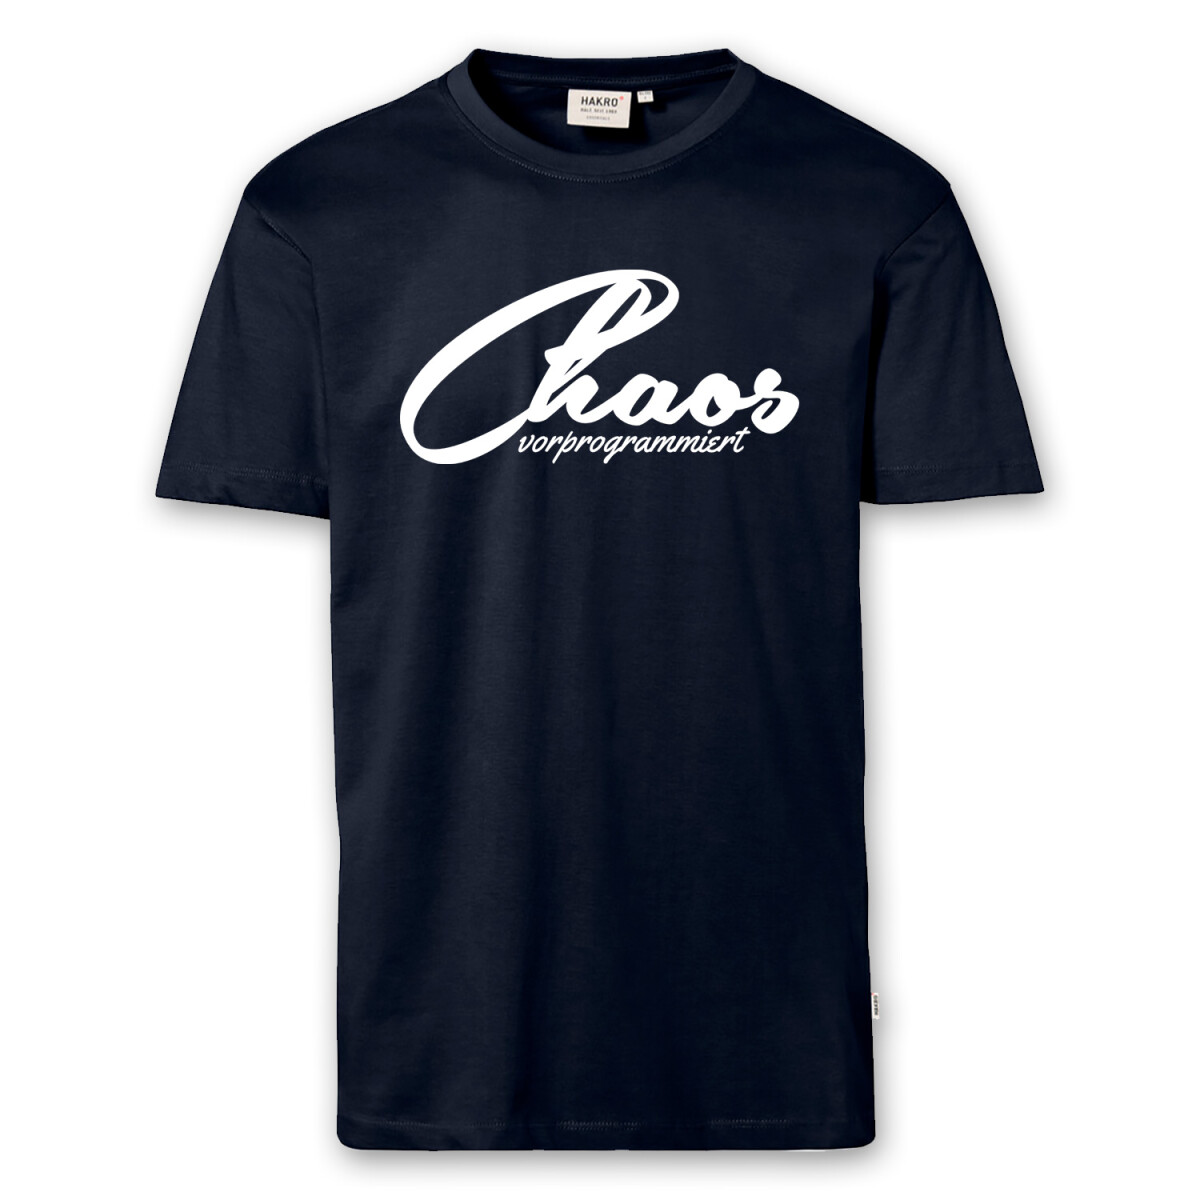 T-Shirt Männer | Fun Shirt Chaos vorprogrammiert |...